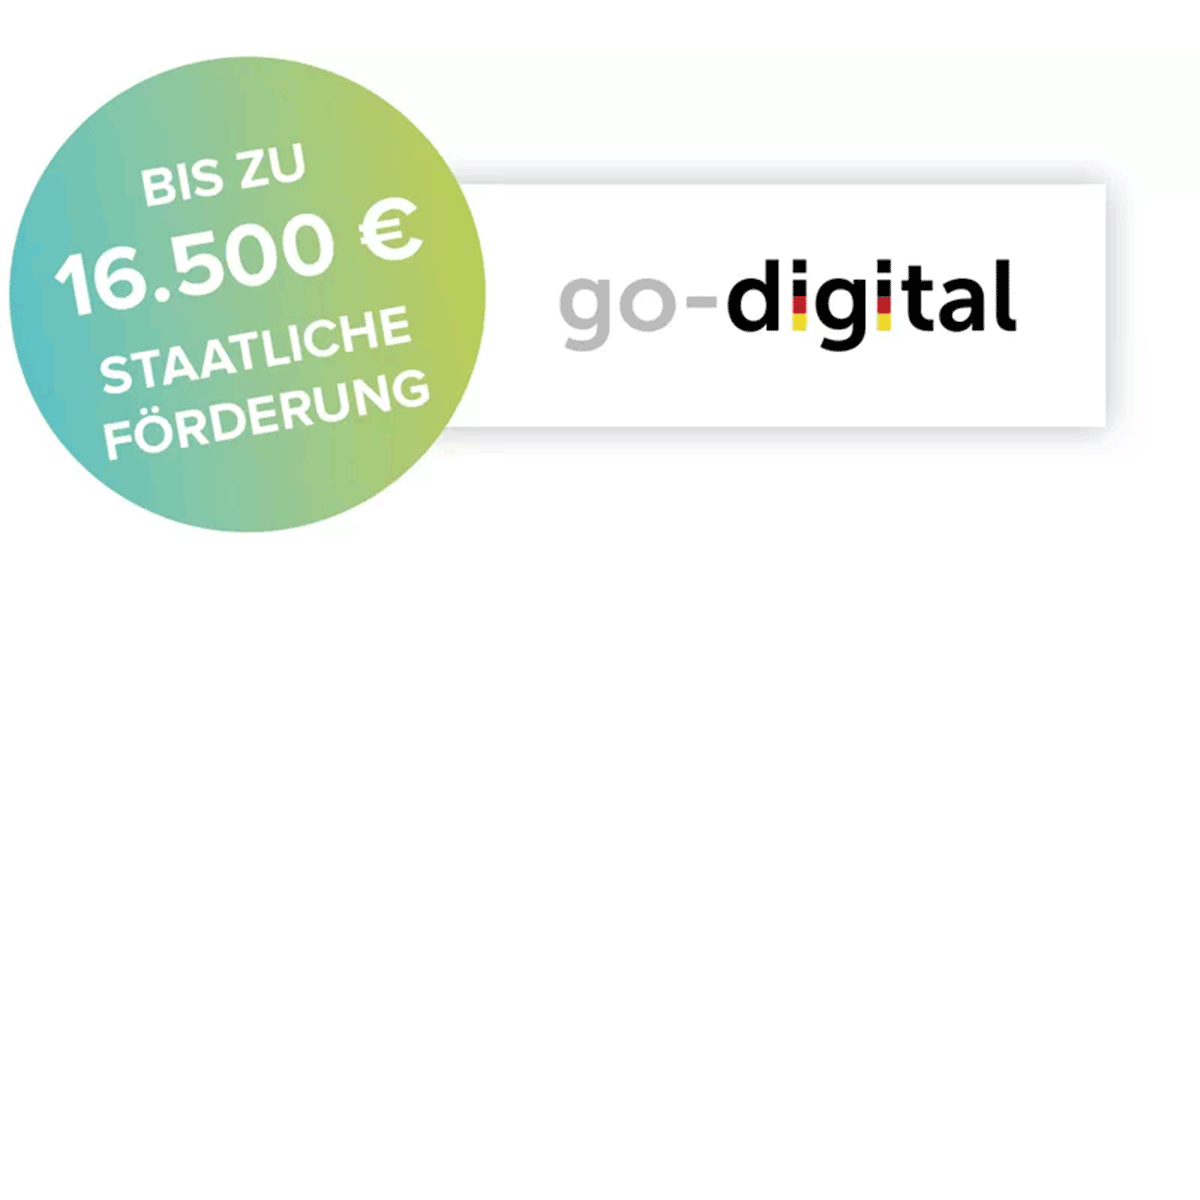 Go-Digital bis zu 16.500€ staatliche Förderung